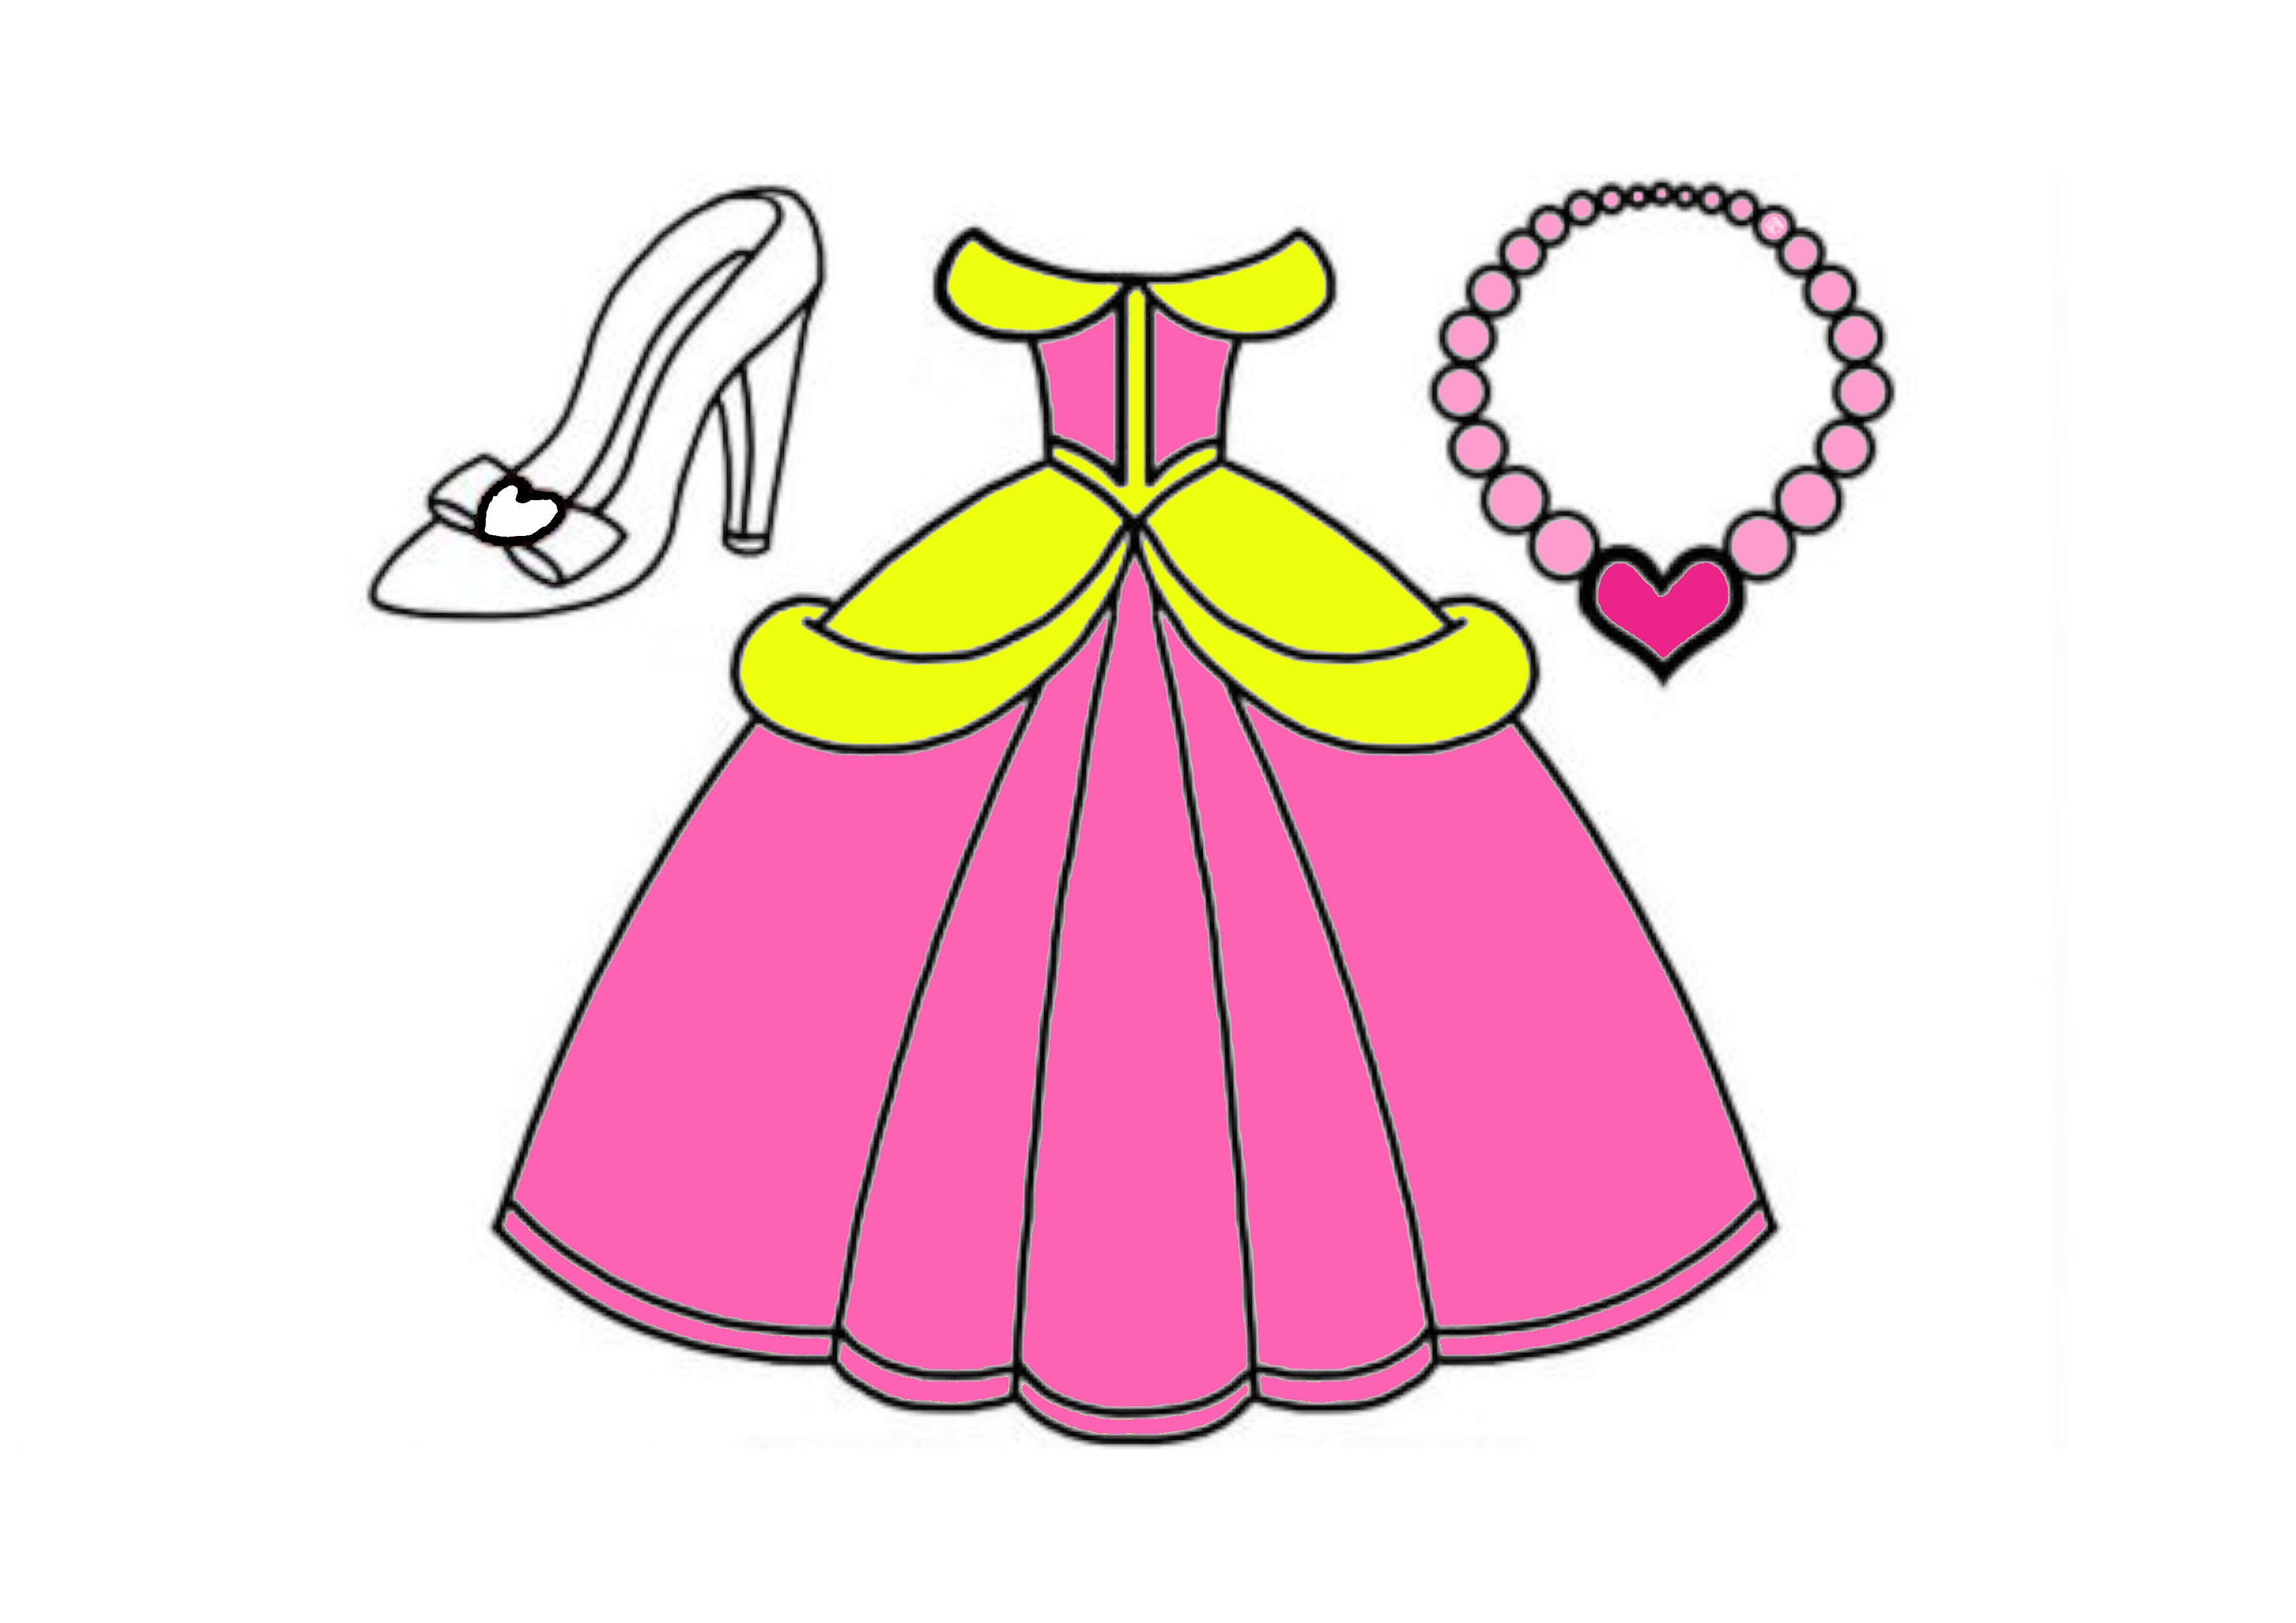 Vẽ váy công chúa đơn giản và tô màu cho bé | Dạy bé vẽ | Dạy bé tô màu |  Gaun Putri Halaman Mewarnai - YouTube